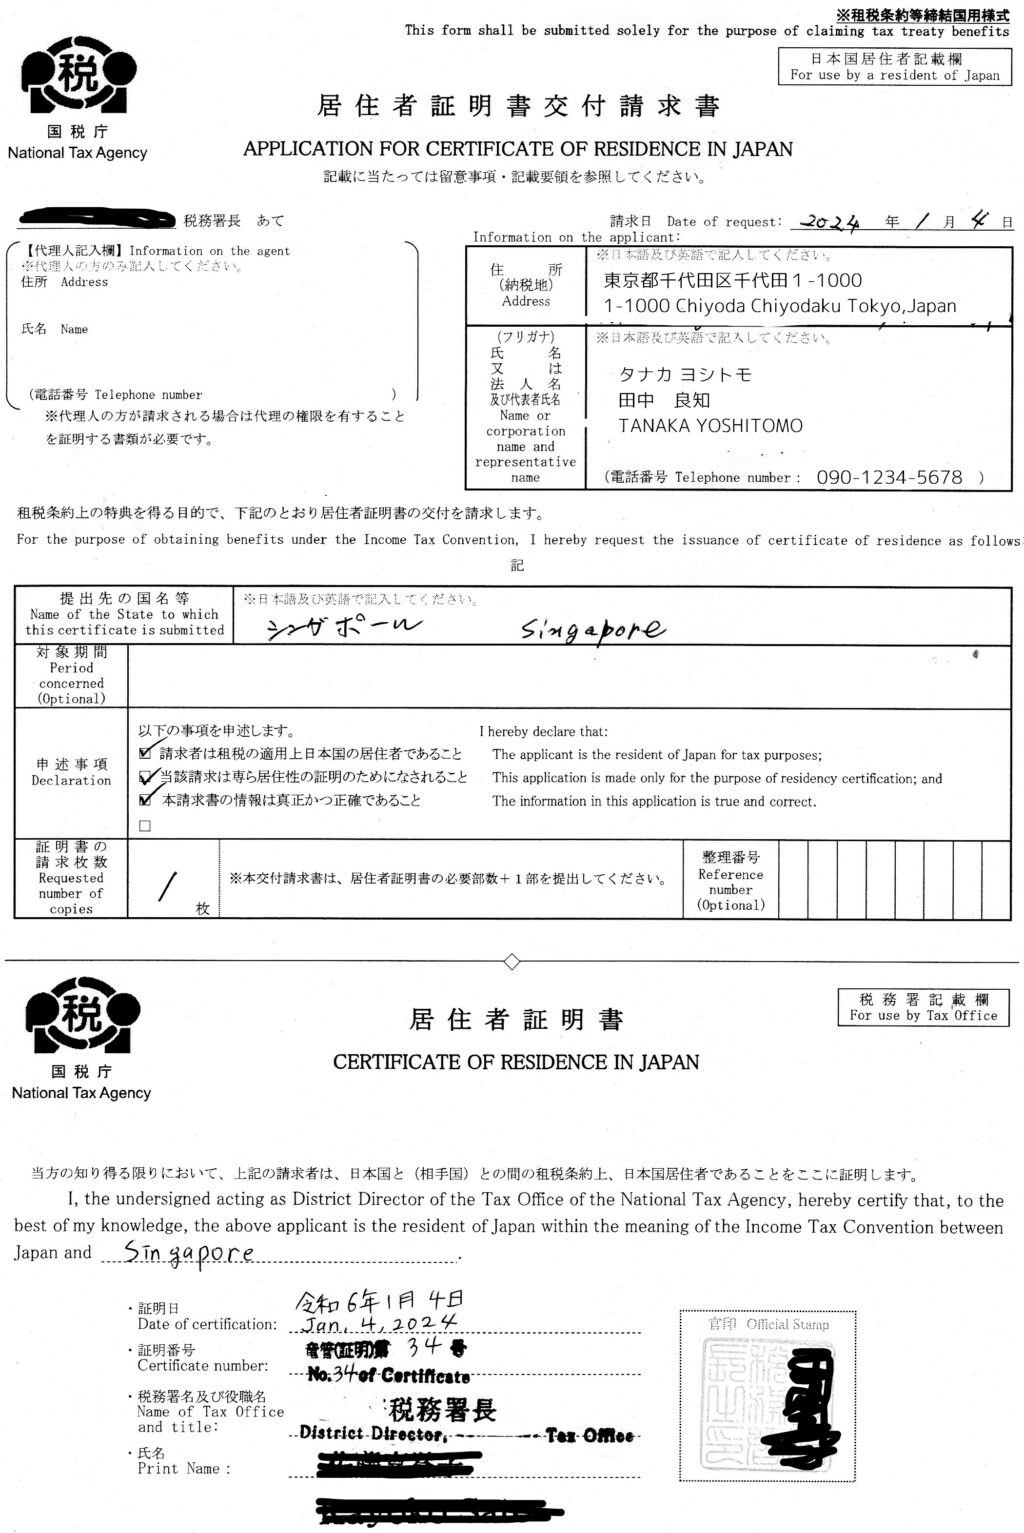 Google Adsense(グーグルアドセンス）の広告収入でシンガポールの税務情報の登録を申請を行った際の事例を紹介